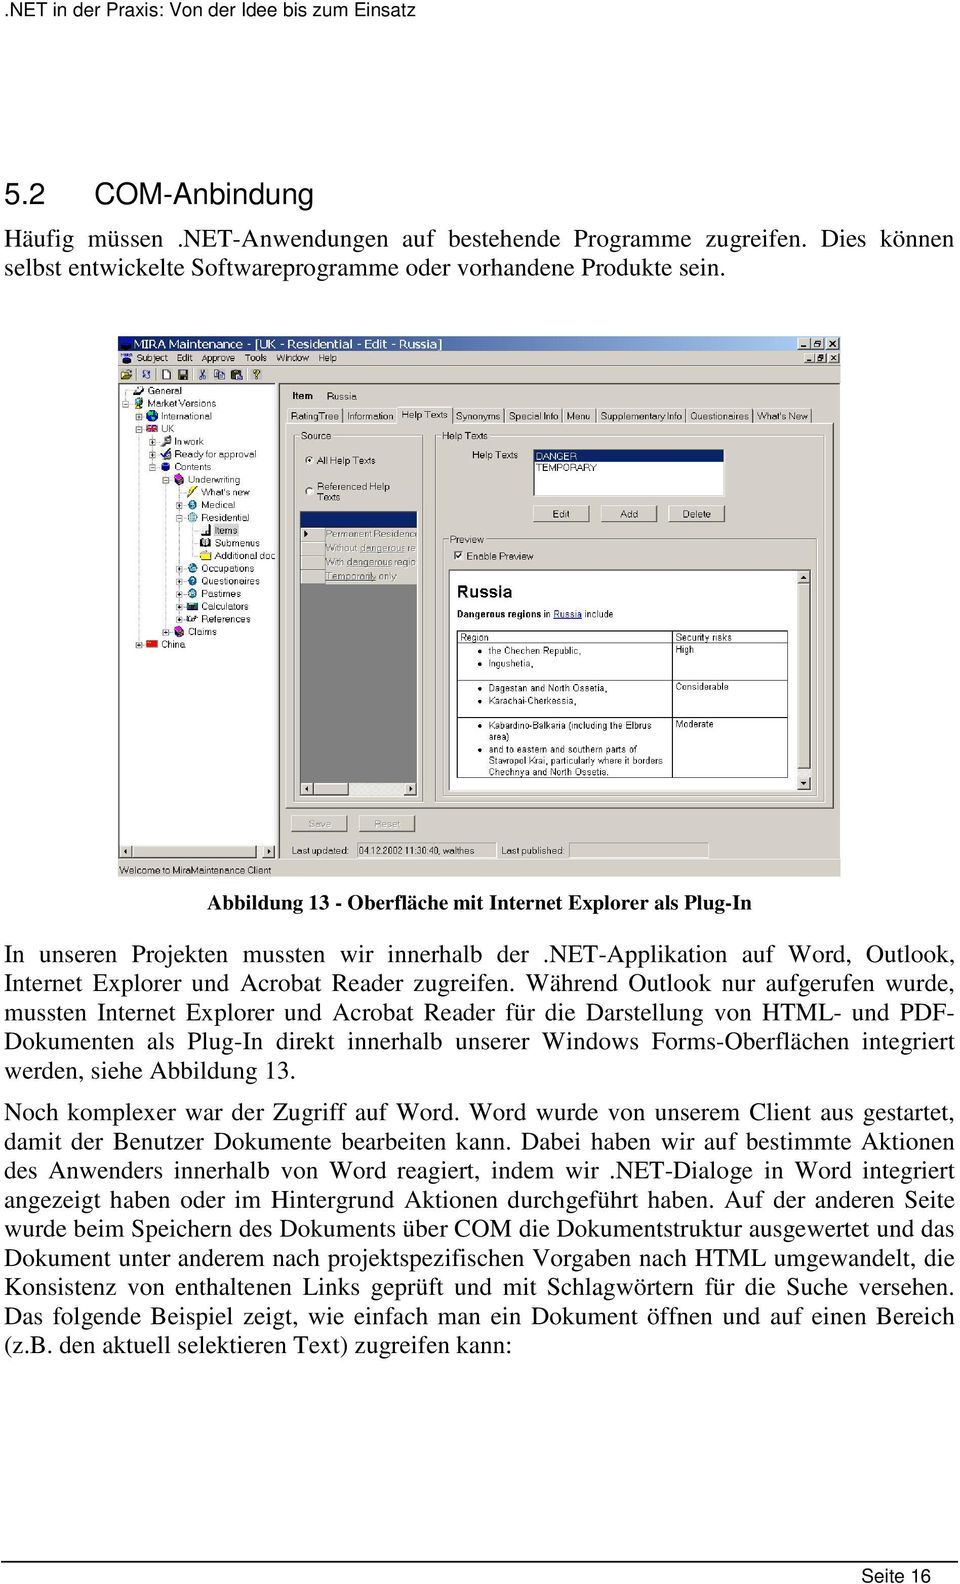 Während Outlook nur aufgerufen wurde, mussten Internet Explorer und Acrobat Reader für die Darstellung von HTML- und PDF- Dokumenten als Plug-In direkt innerhalb unserer Windows Forms-Oberflächen